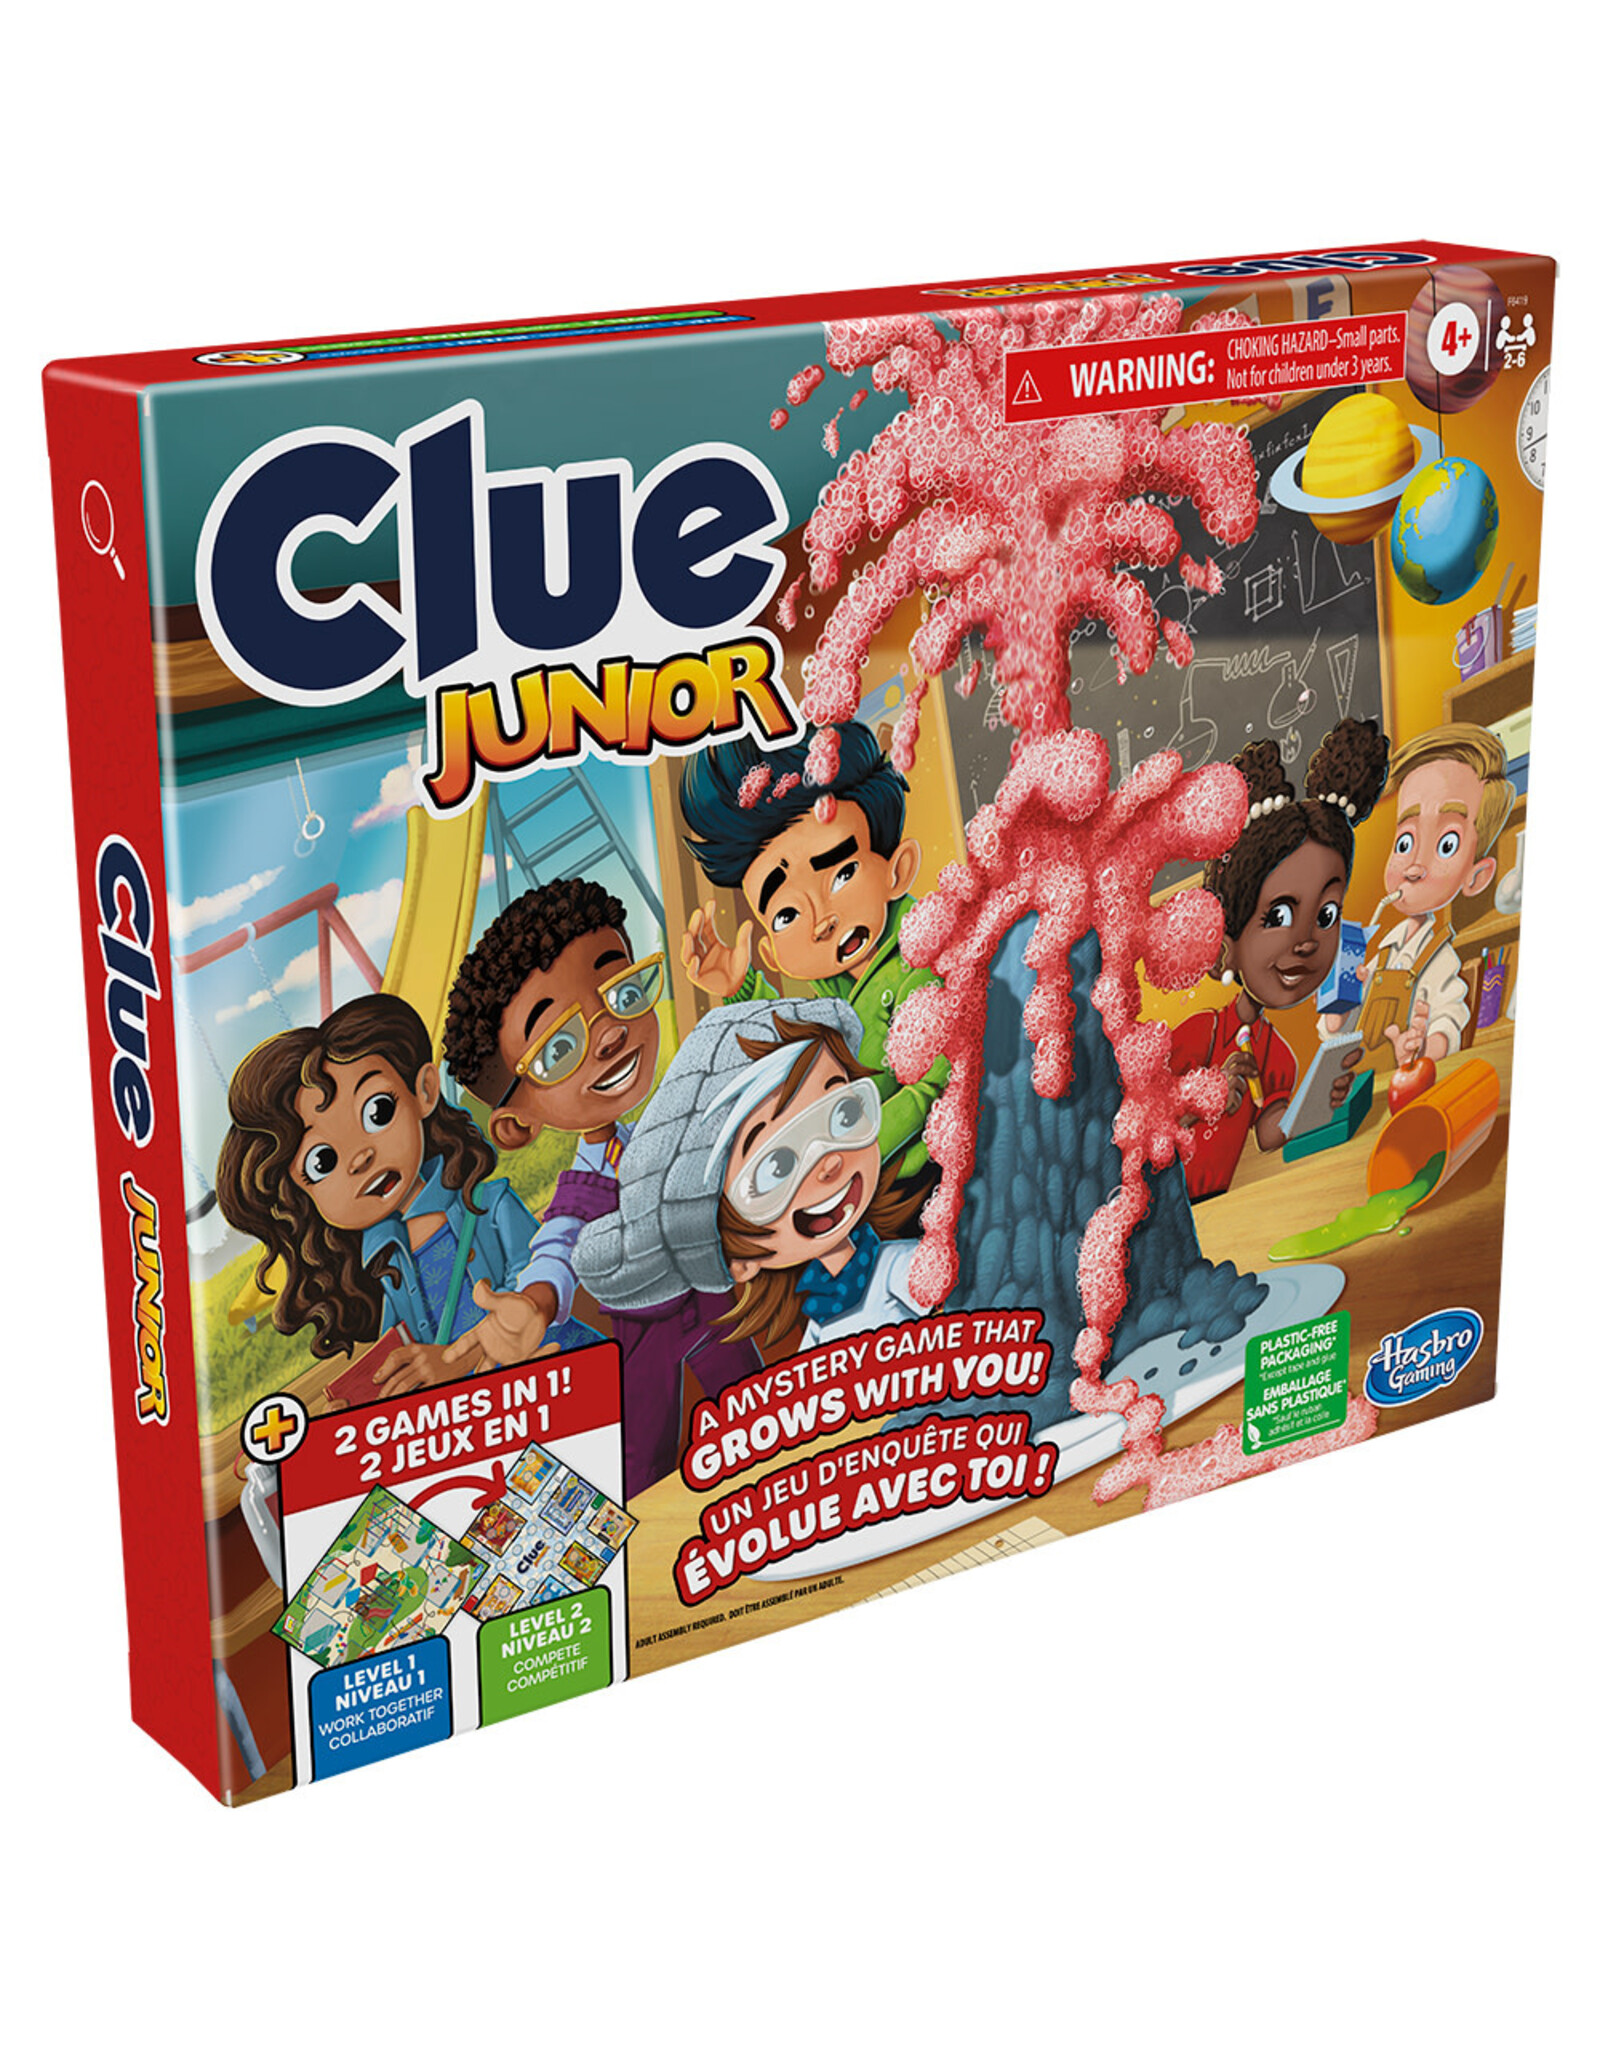 Hasbro Clue Jr Bilingual